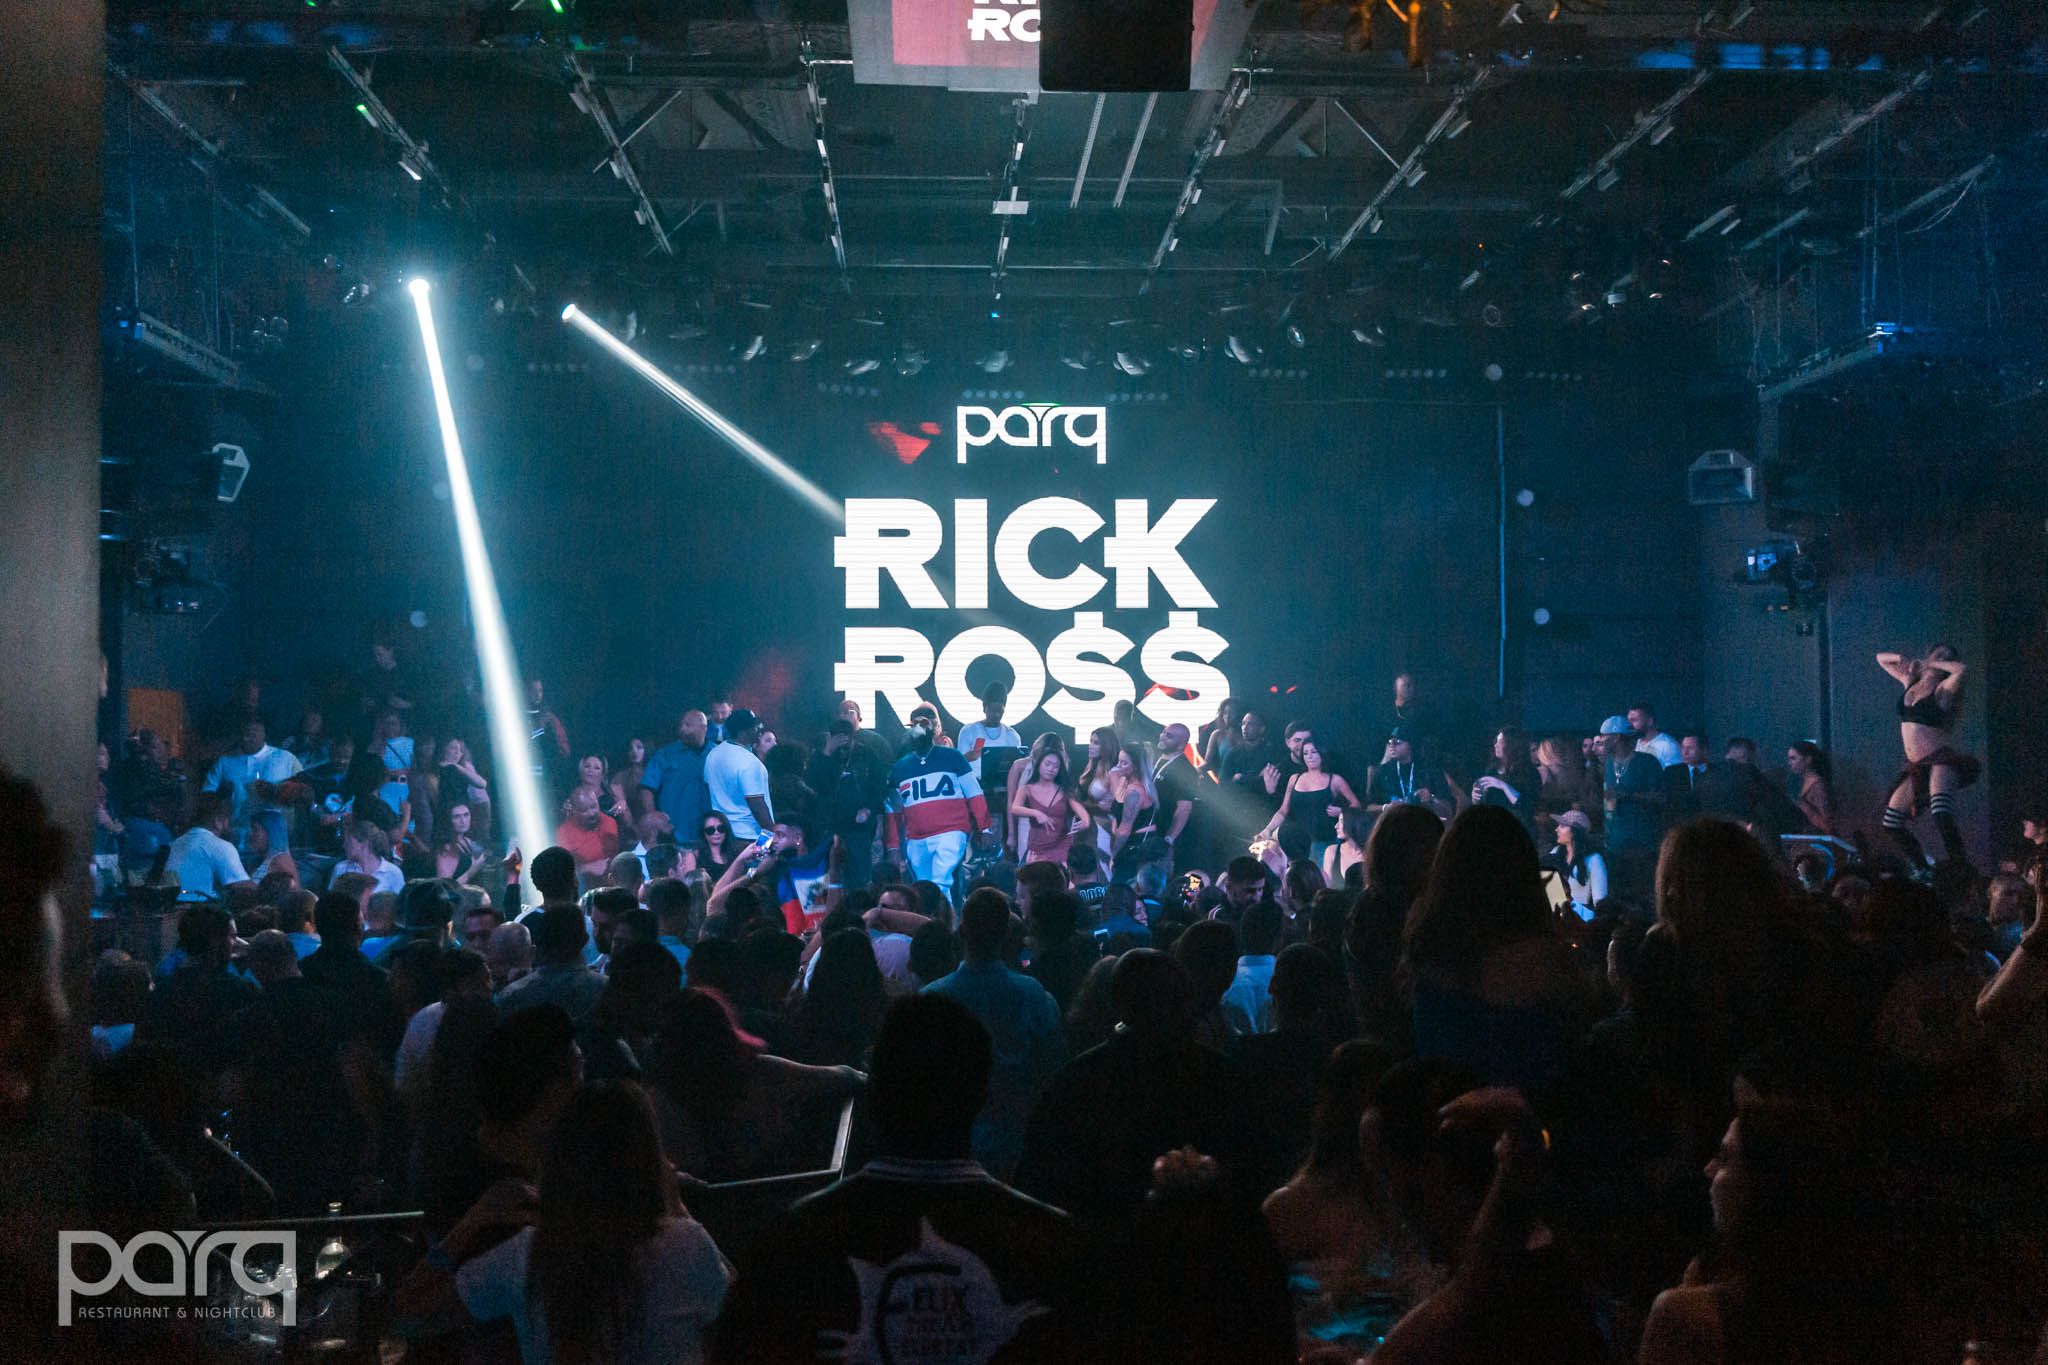 11.03.18 Parq - Rick Ross-7.jpg